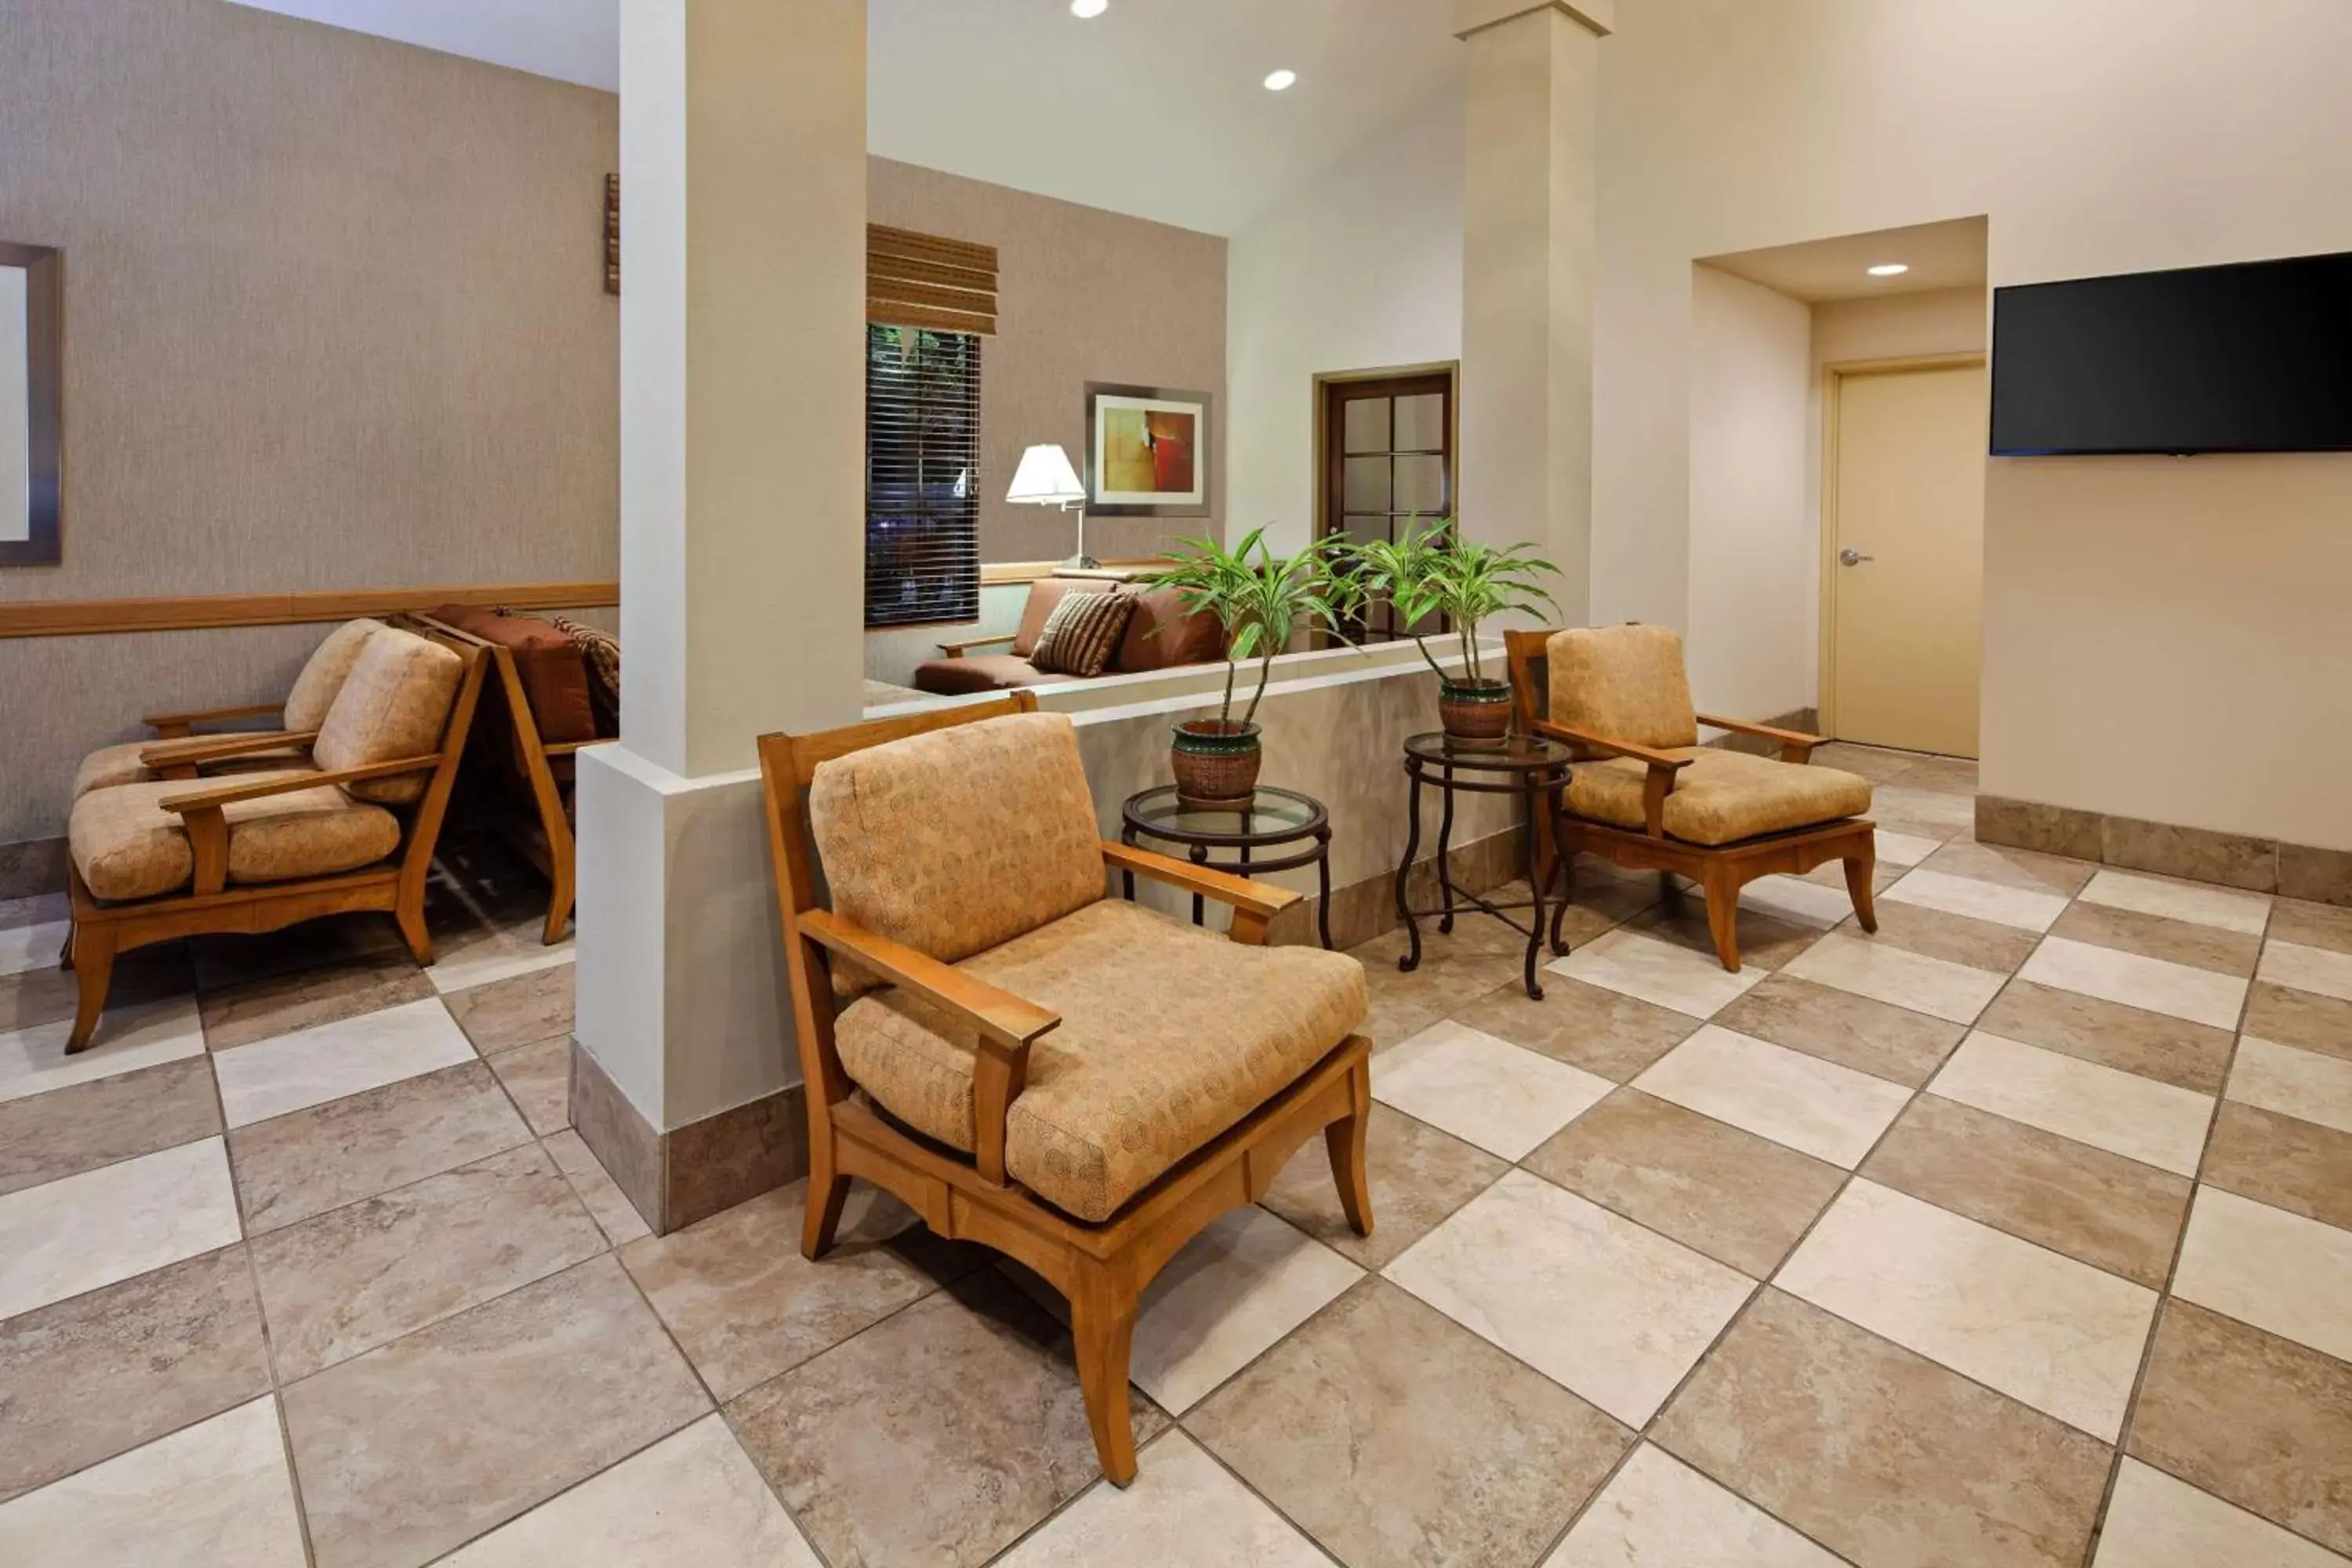 Lobby or reception, Lobby/Reception in Best Western Chula Vista/Otay Valley Hotel